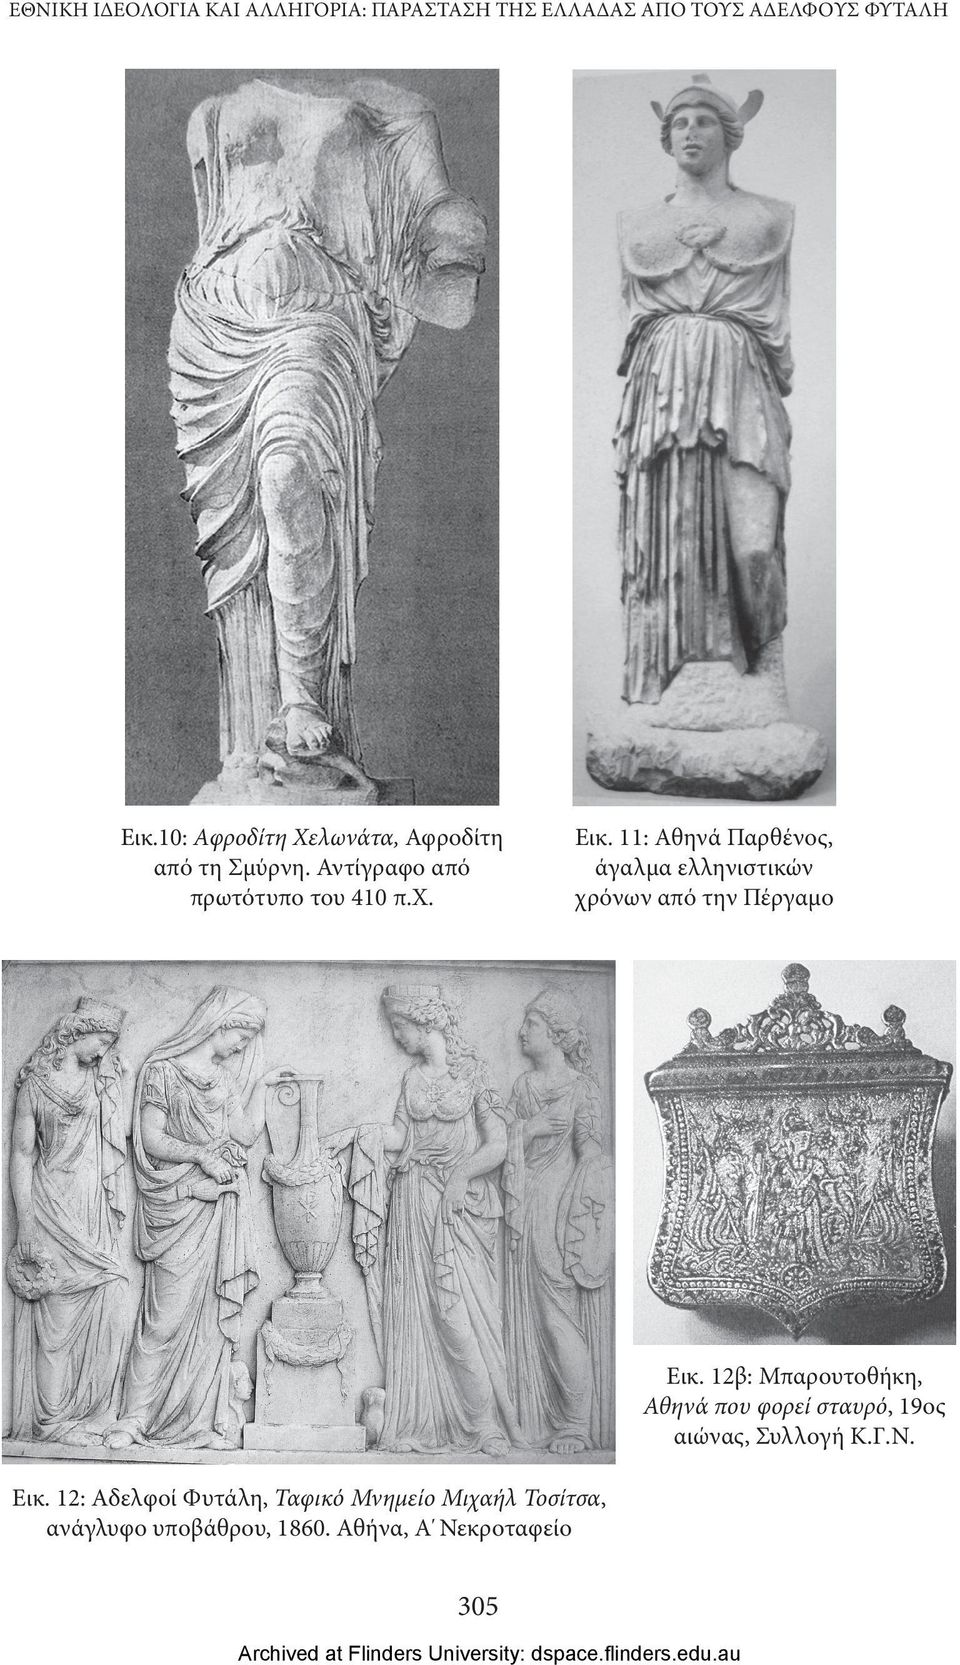 11: Αθηνά Παρθένος, άγαλμα ελληνιστικών χρόνων από την Πέργαμο Εικ.